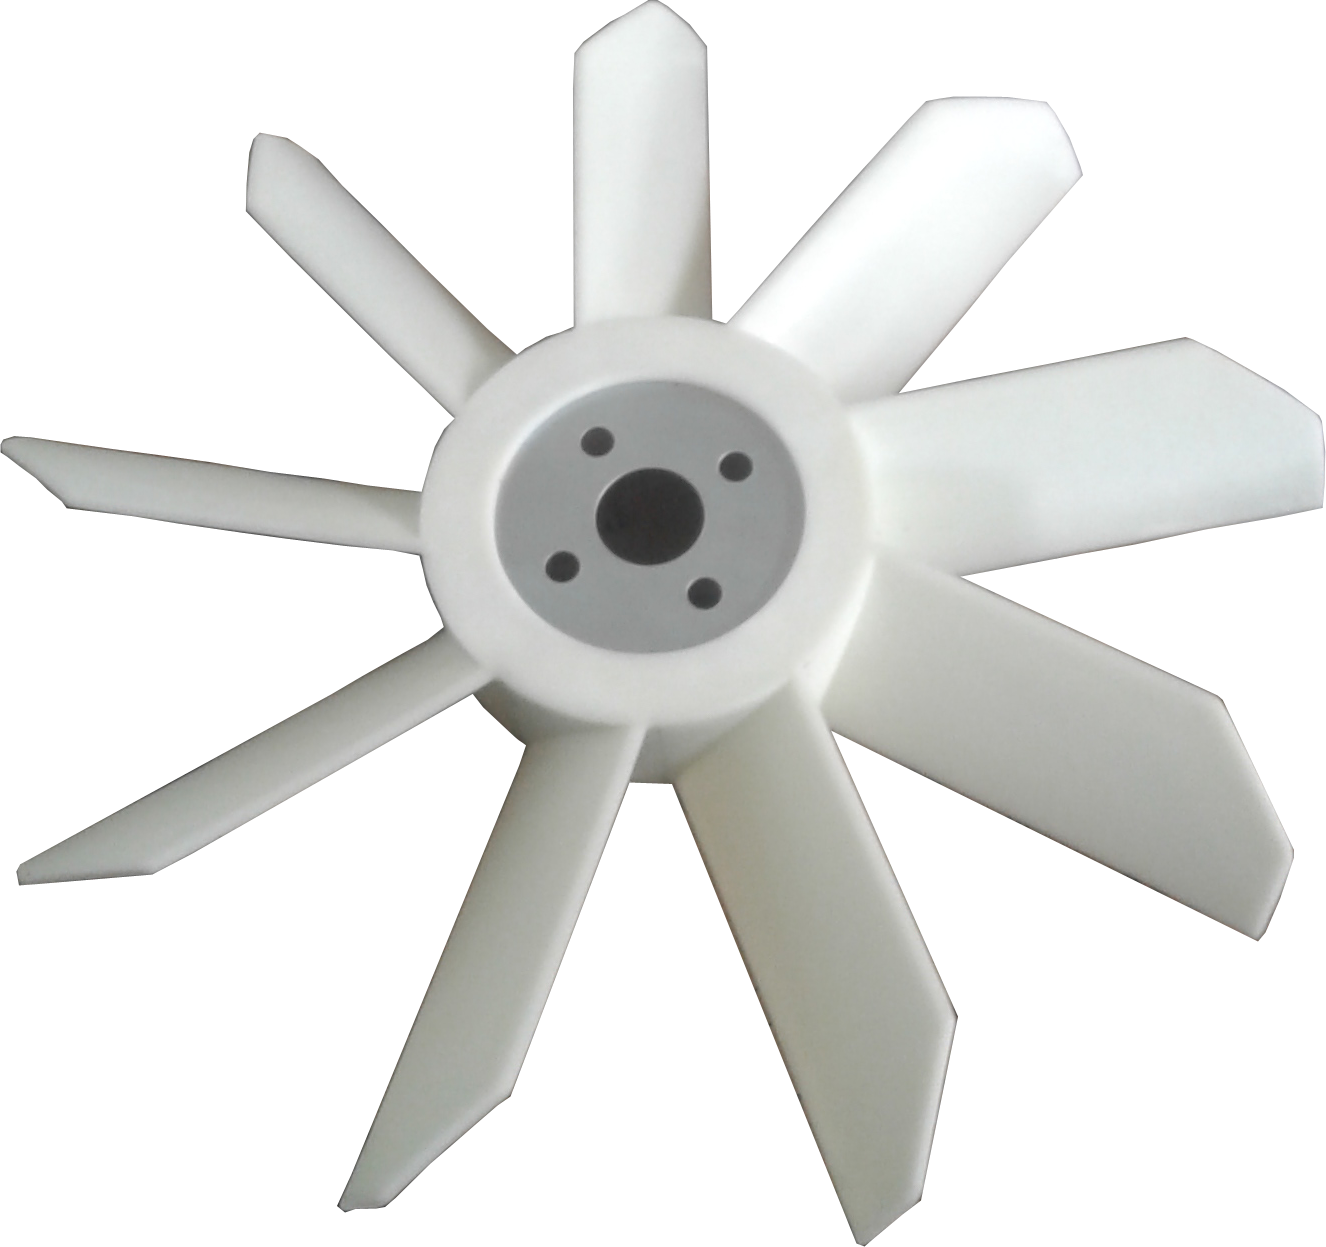 Fan 3 вентилятор. Вентилятор 66-1308010. 236бк-1308010. 650.1308010 Вентилятор. Электроуправляемый вентилятор 6585.1308010.